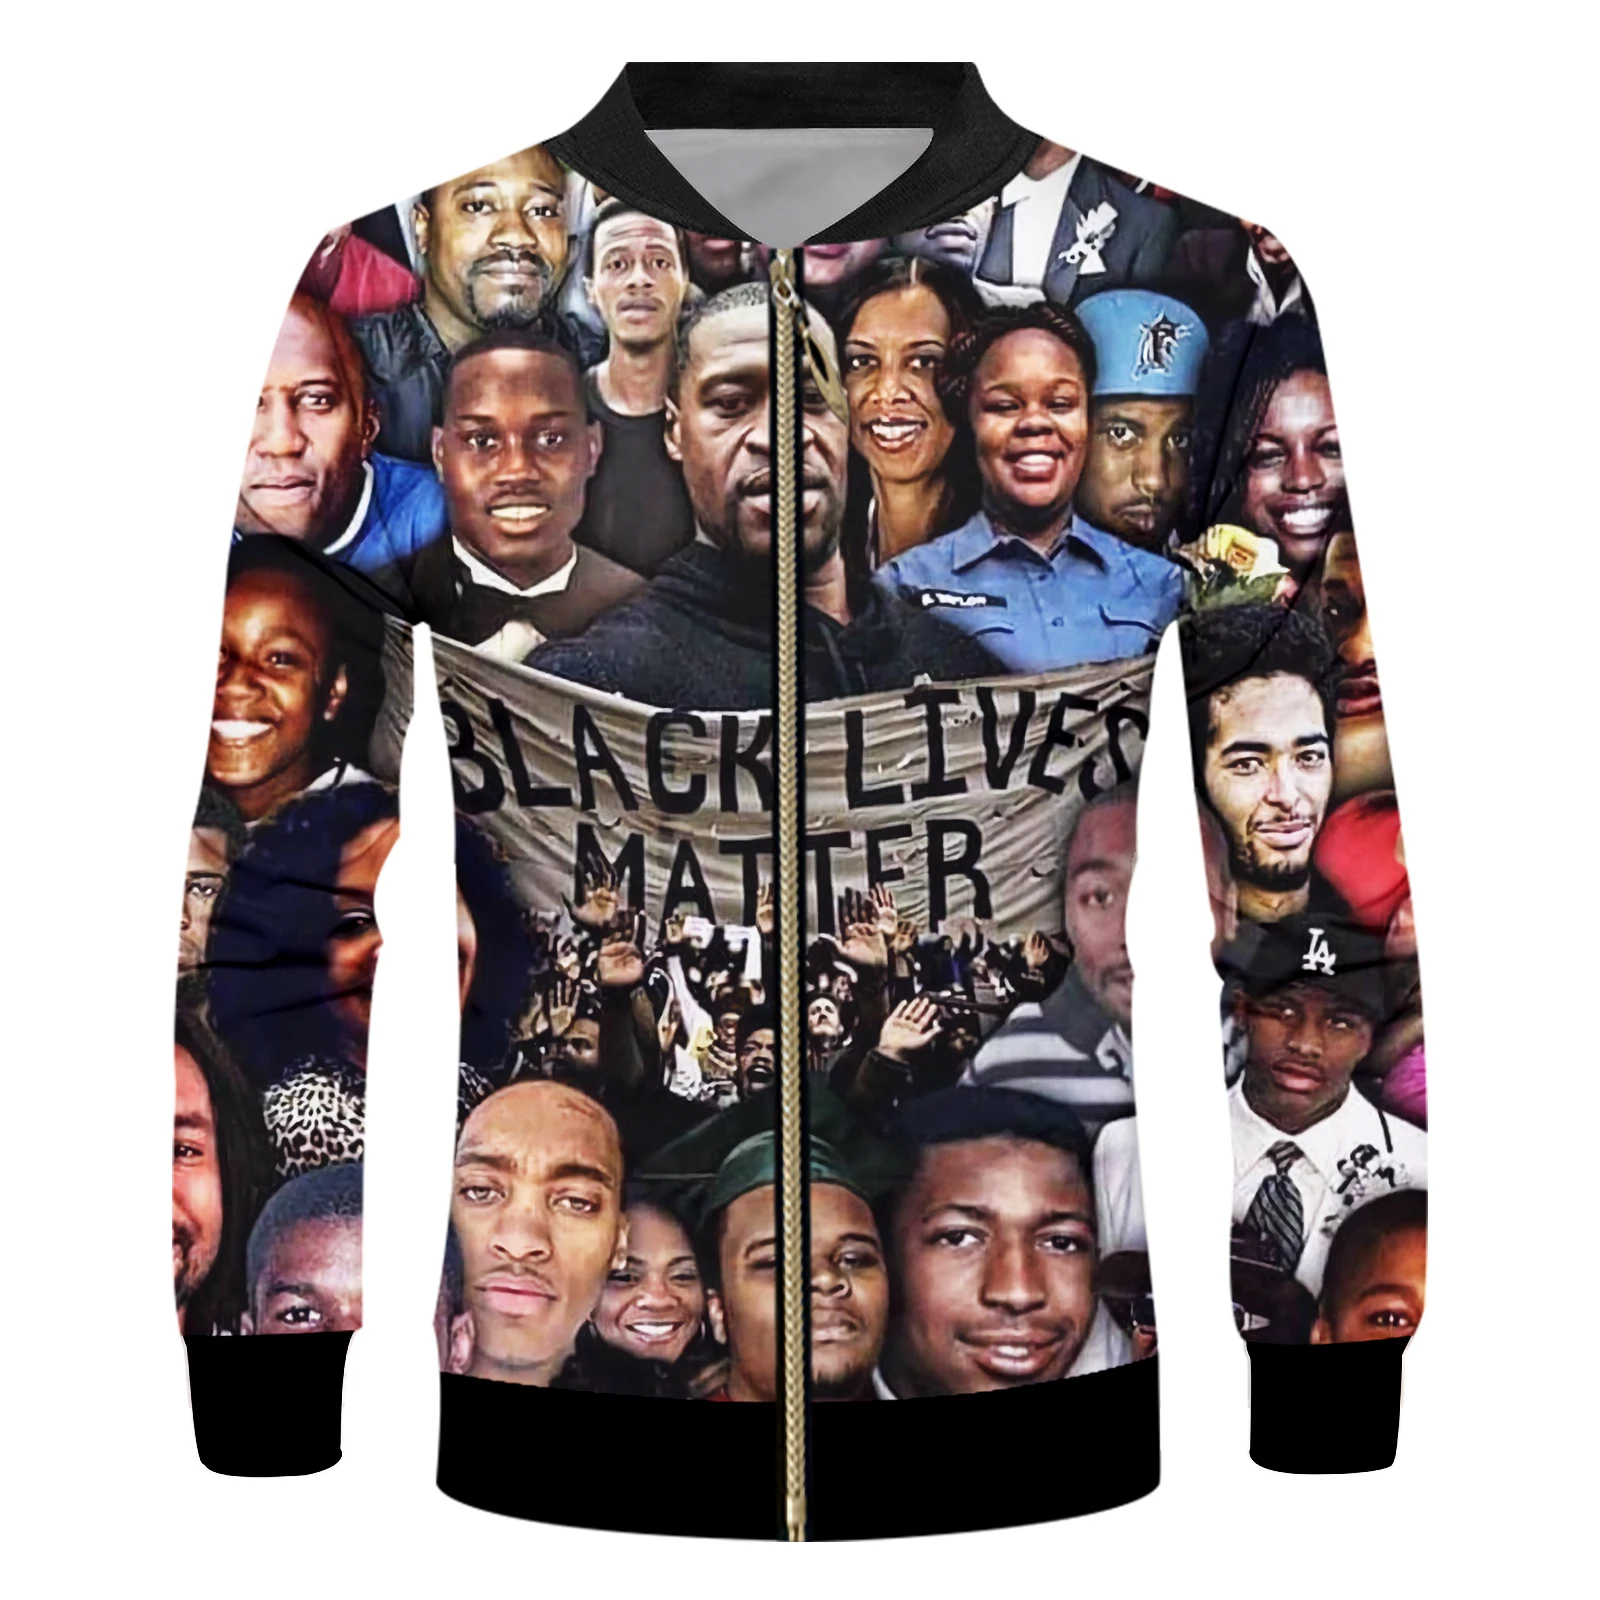 

OGKB American SIZE Black Lives Matter Collage Sublimation 3D Print Men's Casual Zipper Up Jacket Plus Size 4XL 5XL 6XL Wholesale